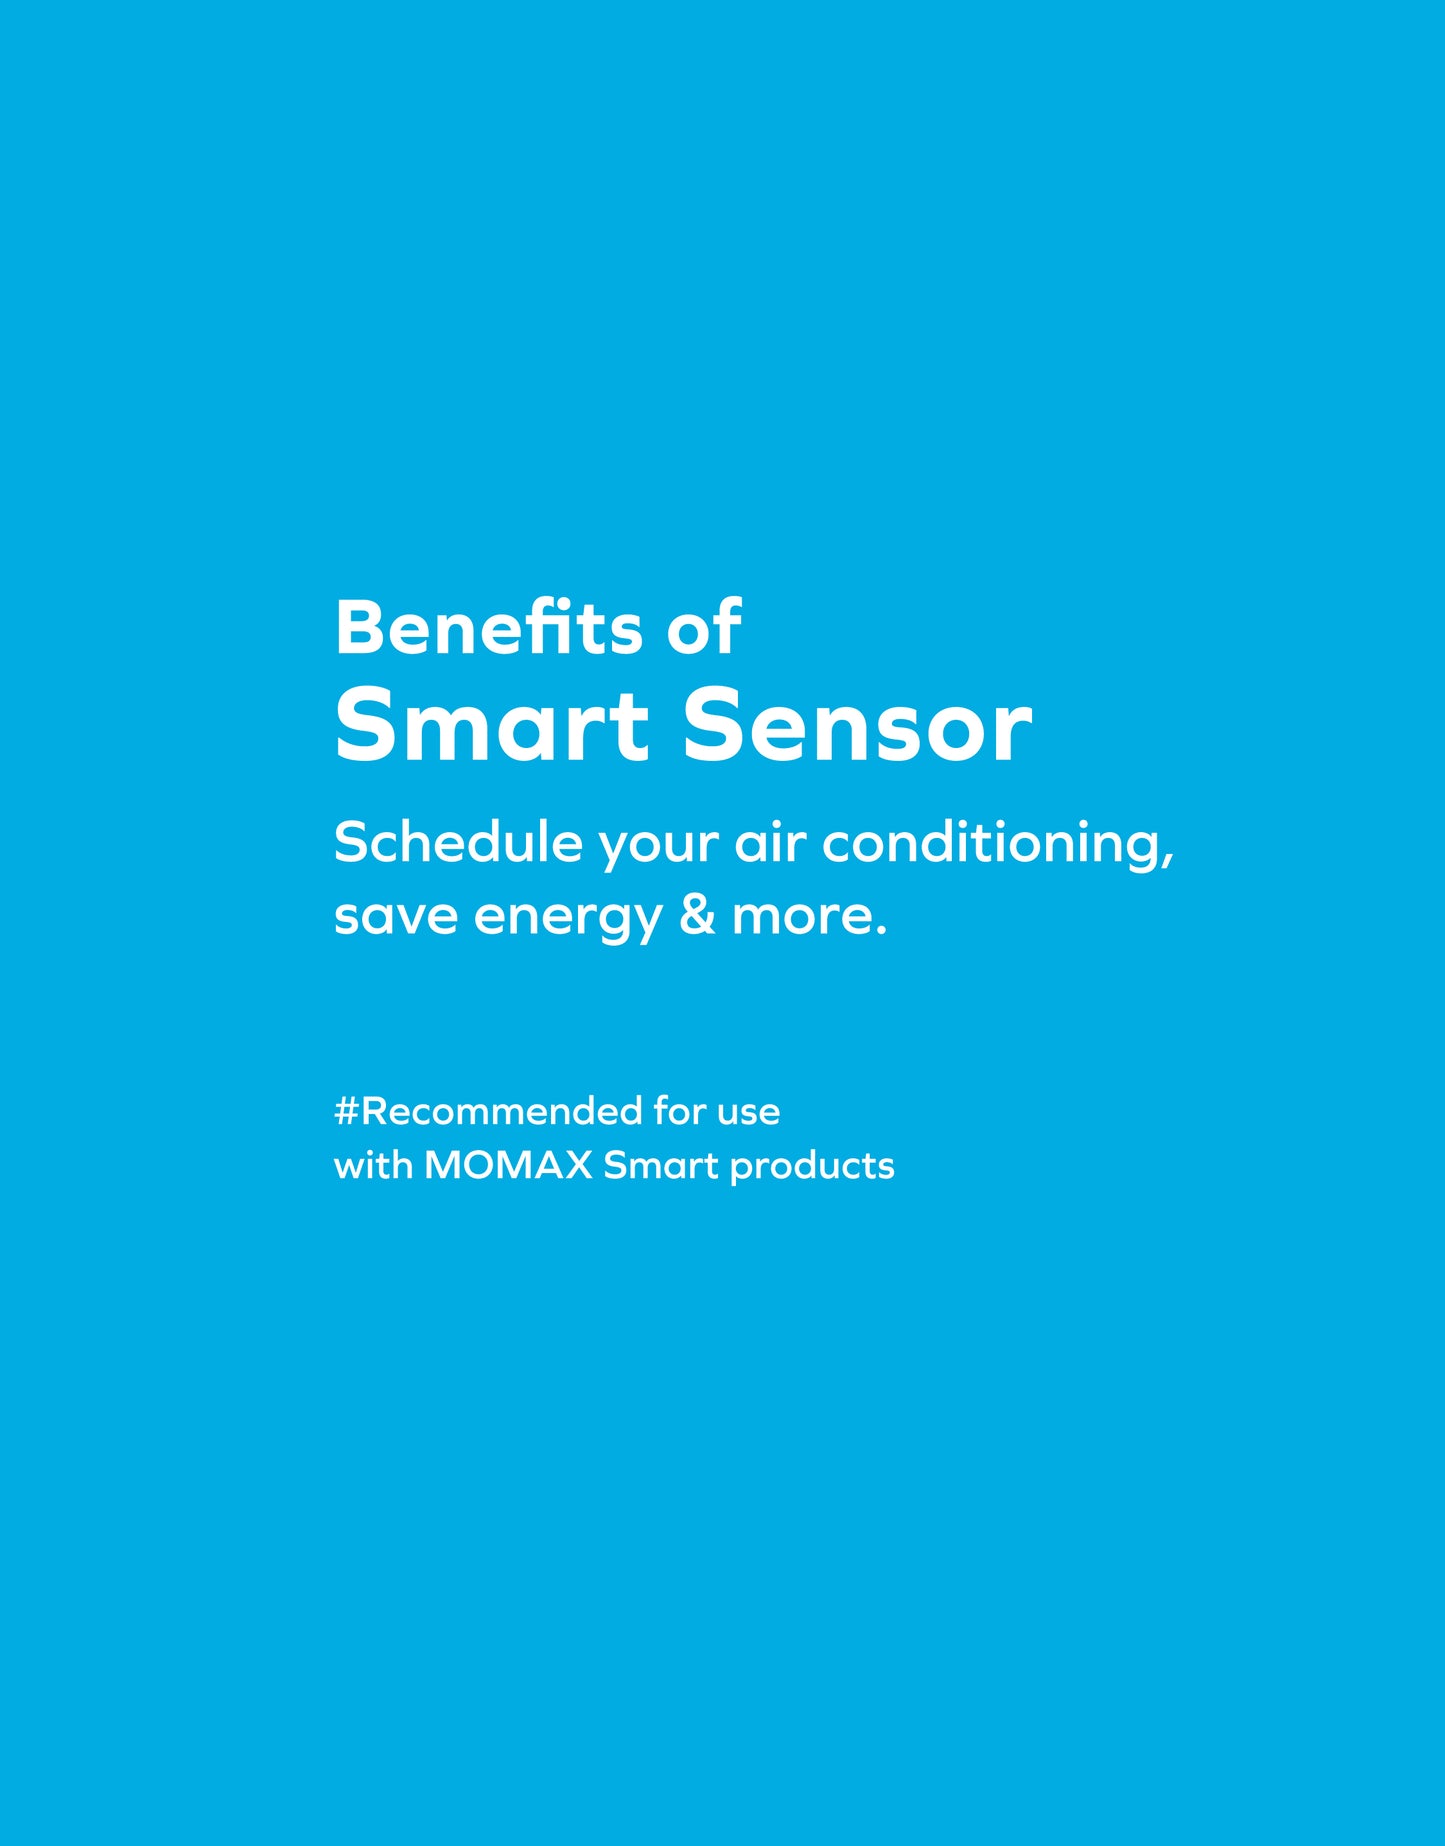 Smart Temperature & Humidity Sensor (SL6SW) --Sensor